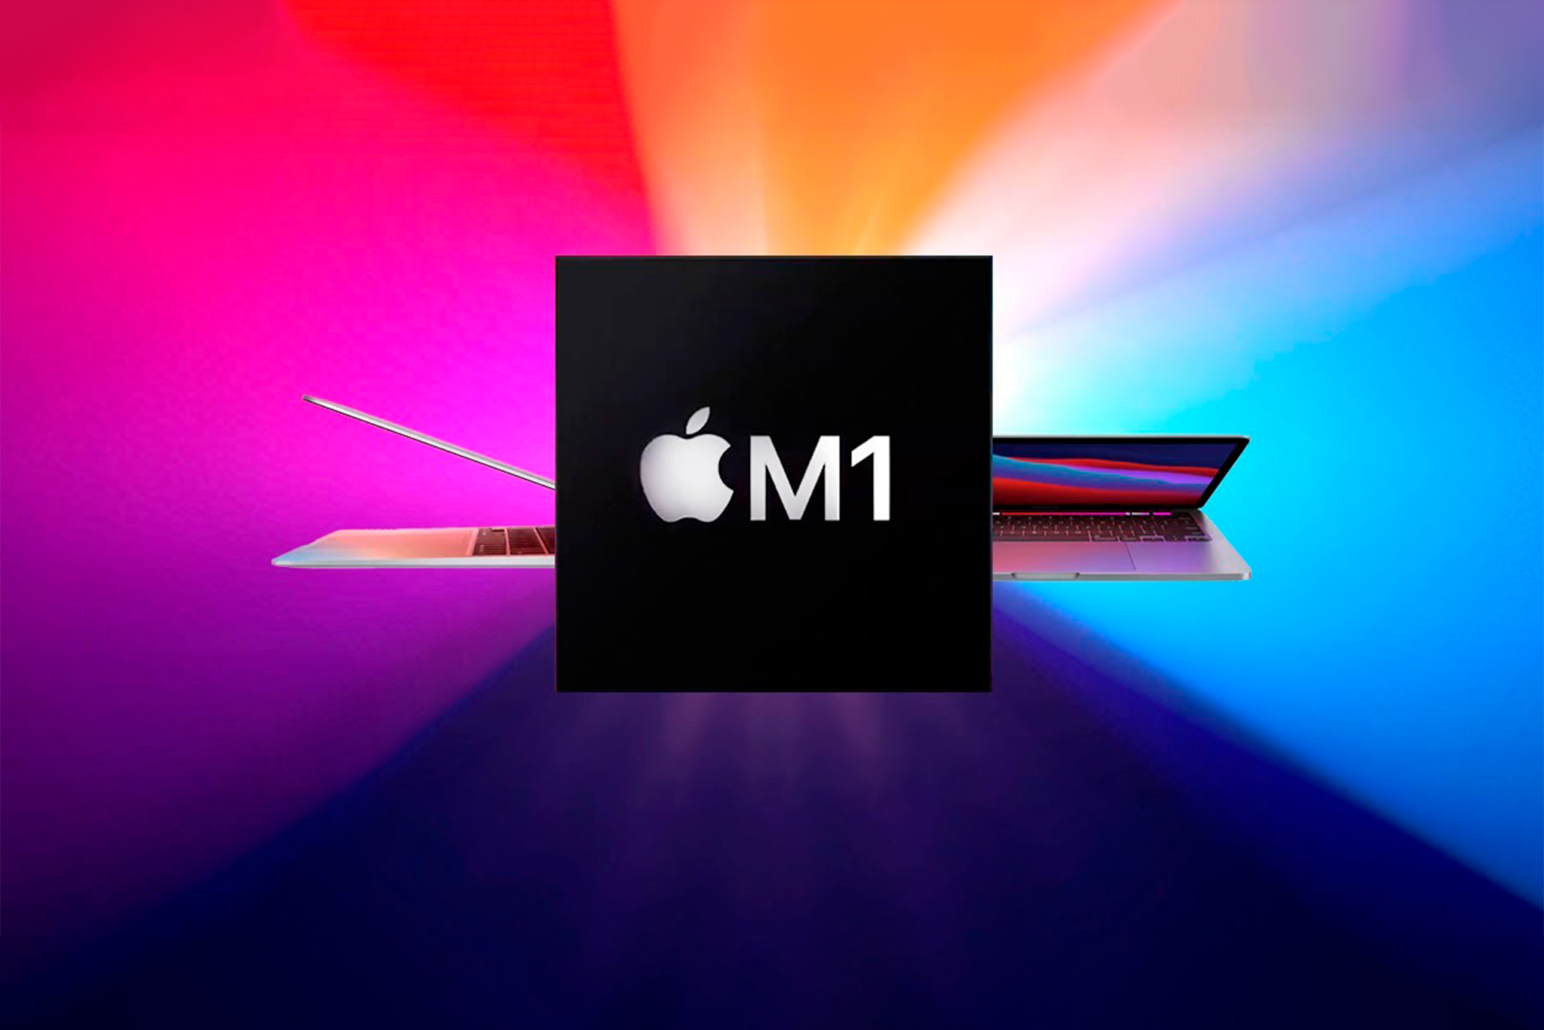 Os novos MacBooks com processadores M1 da própria Apple, podem mudar os PCs como os conhecemos.